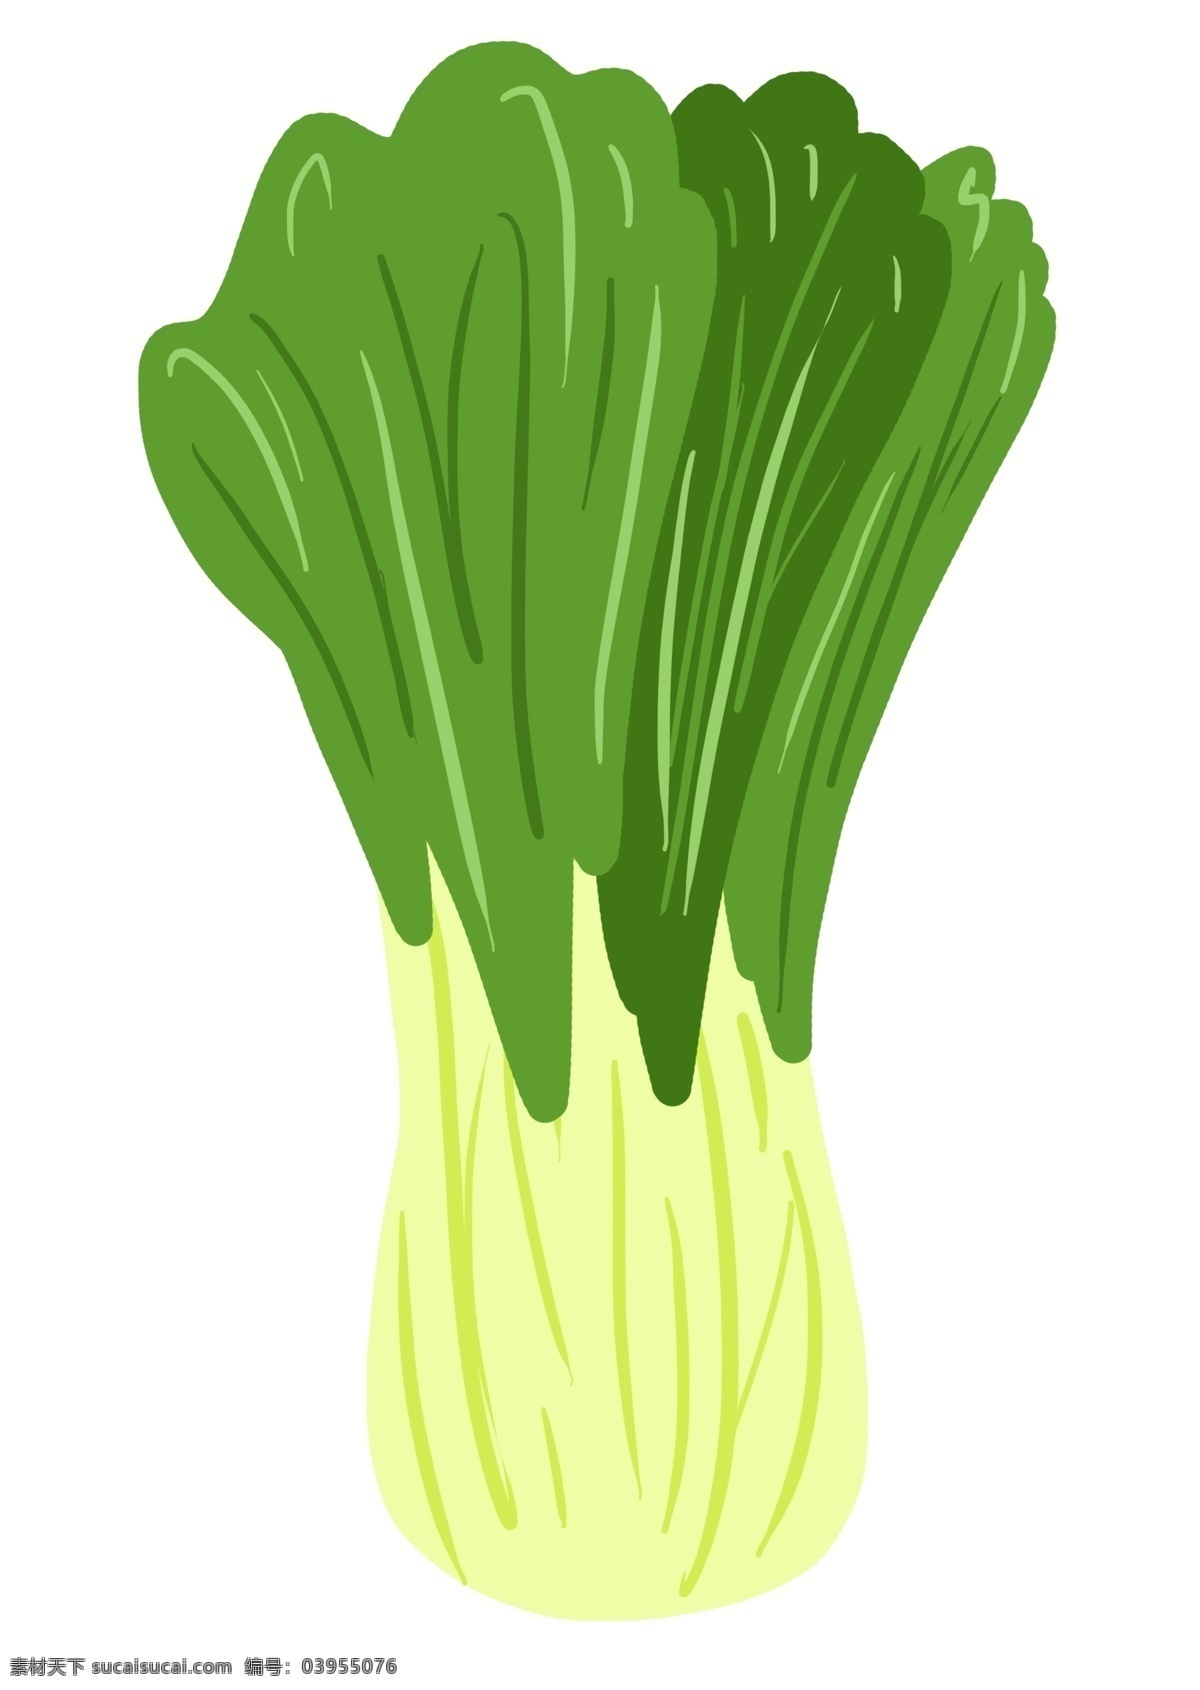 手绘 卡通 青菜 插画 可爱 食物 海报配图 小清新风格 绿色食物 健康食物